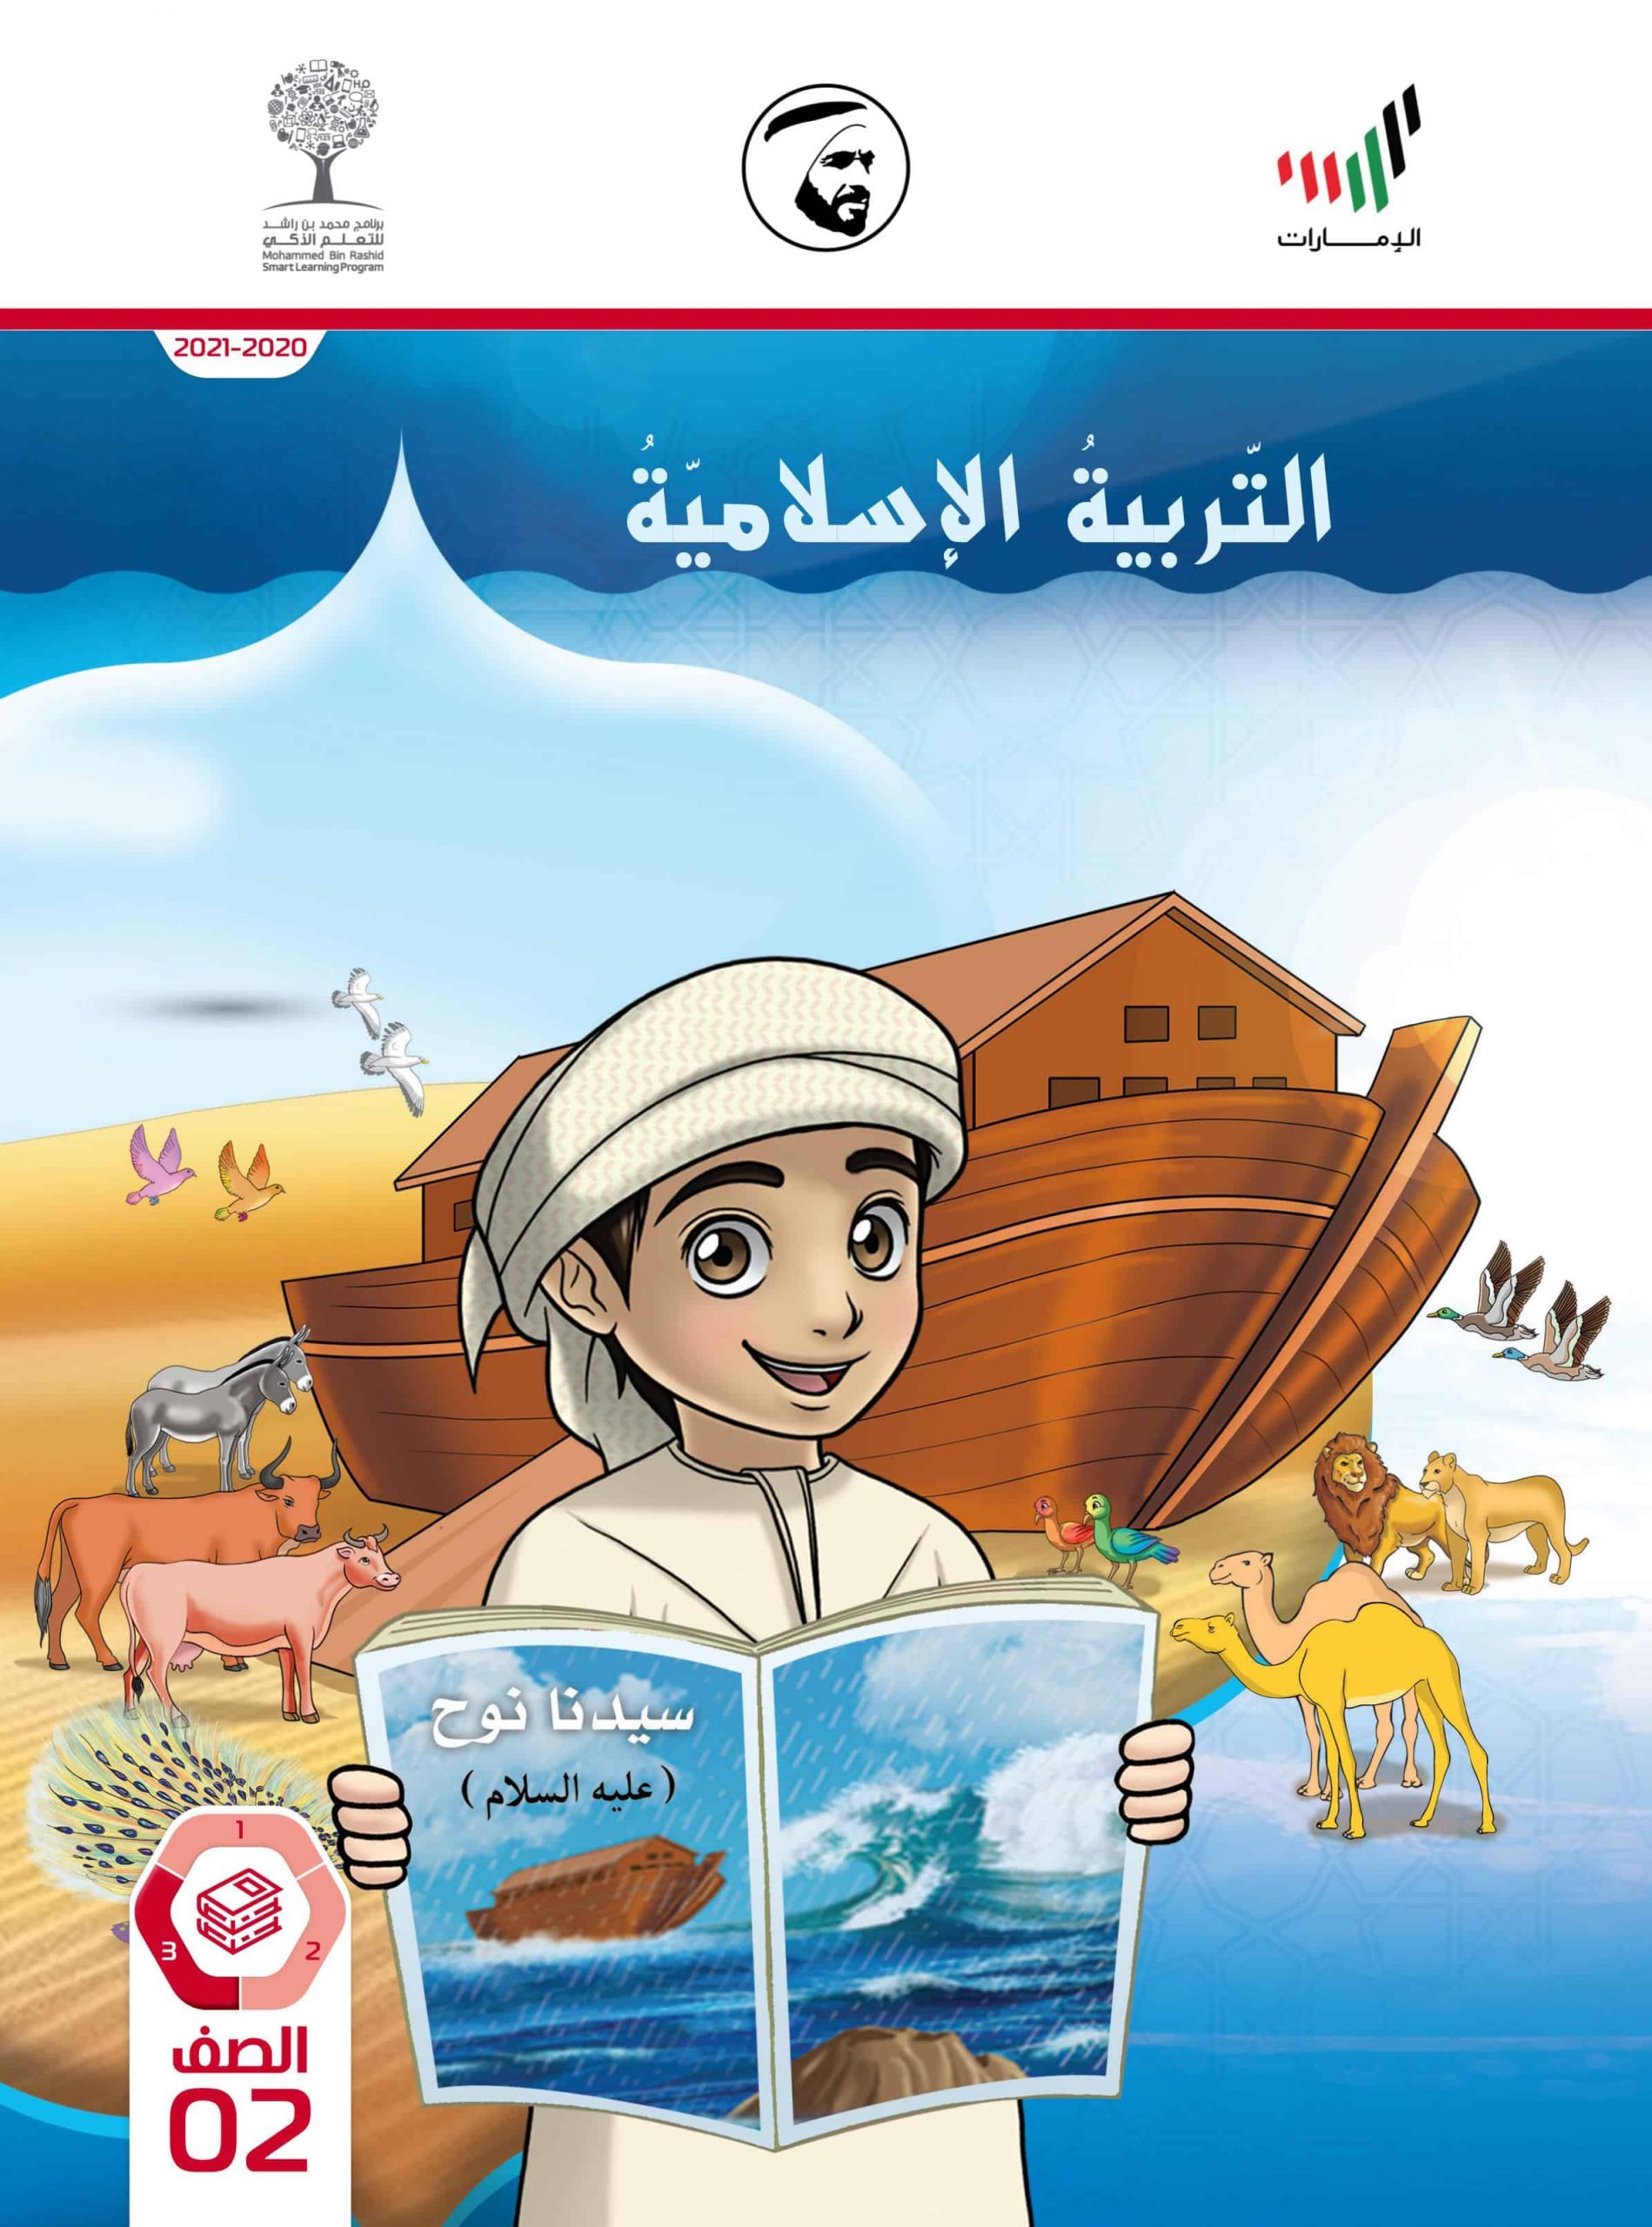 كتاب الطالب الفصل الدراسي الثالث 2020-2021 الصف الثاني مادة التربية الإسلامية 